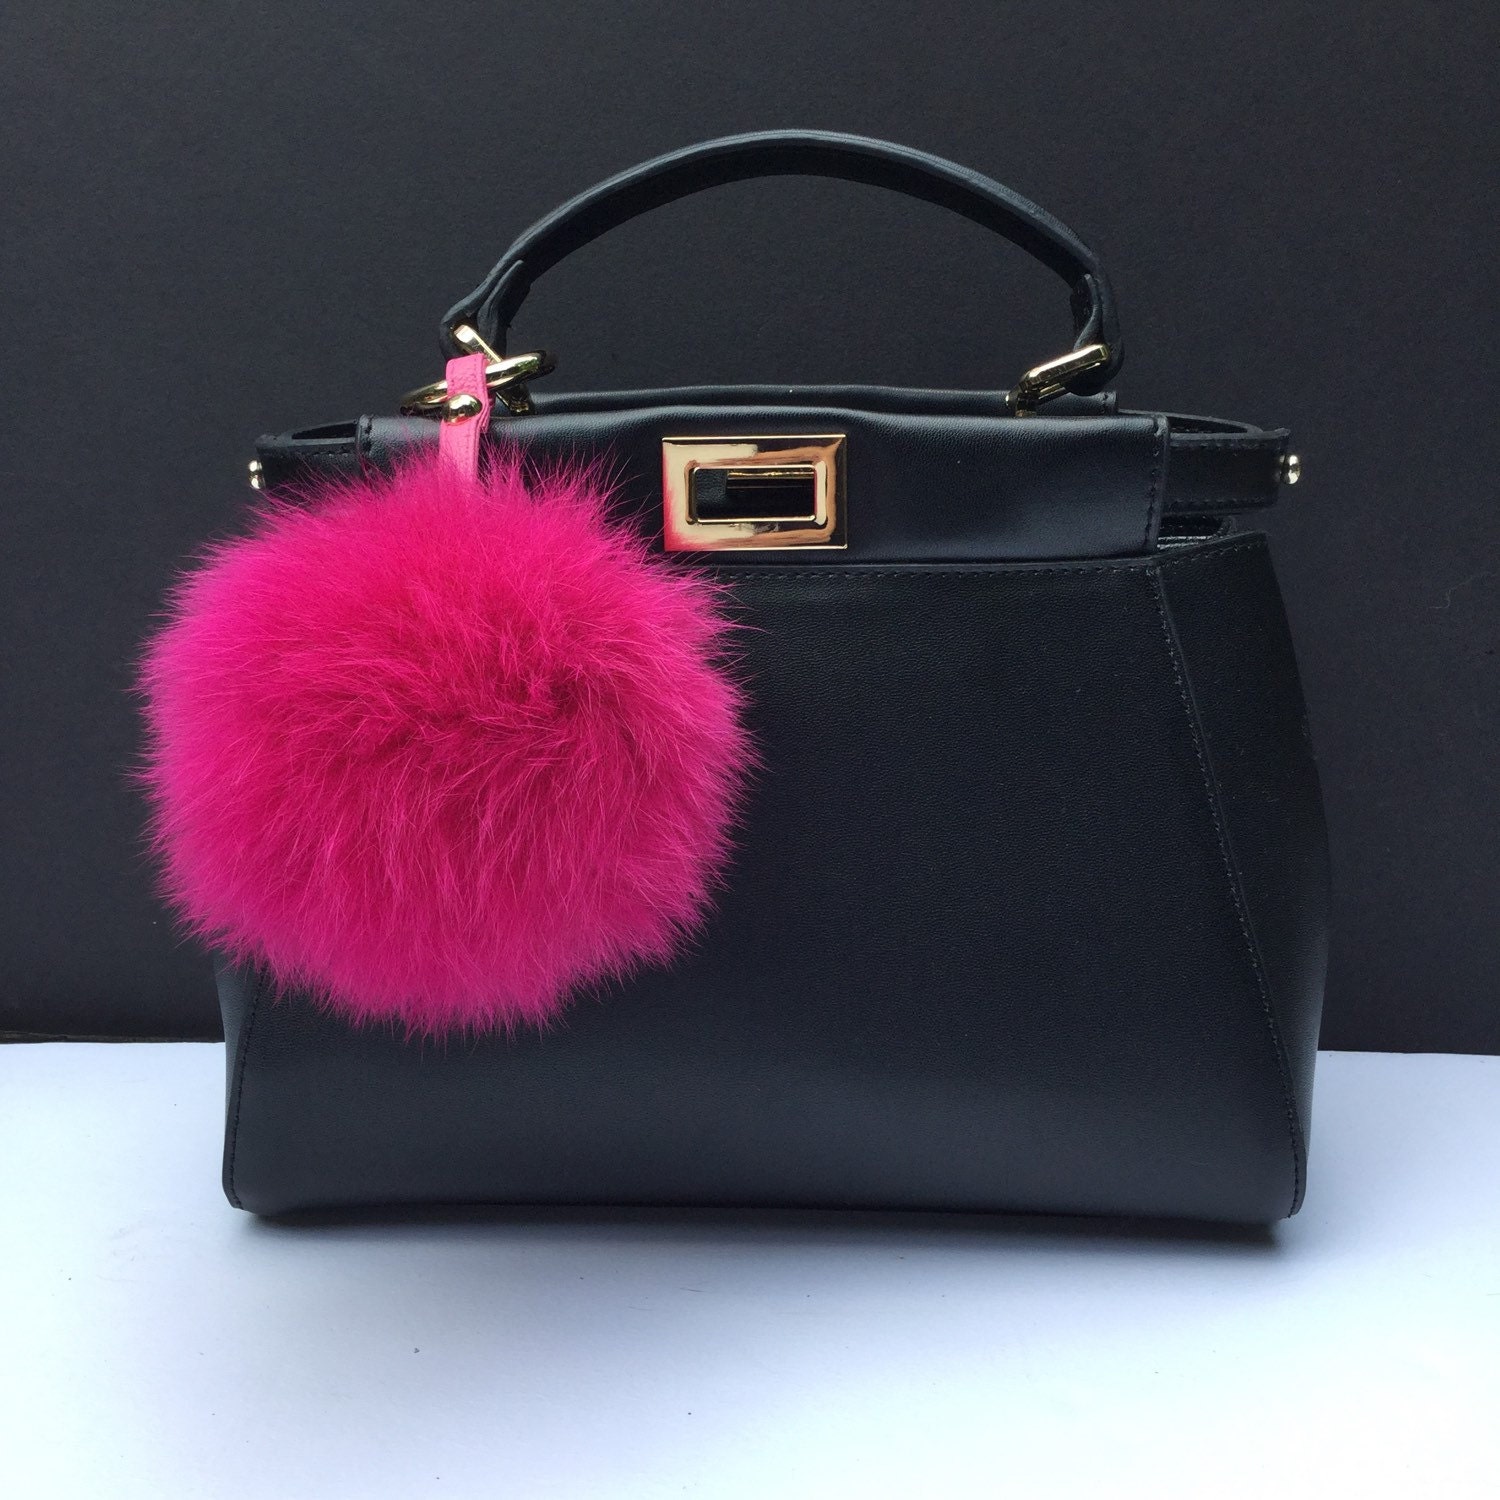 Fur bag charm fur pom pom keychain fur ballkeyring by YogaStudio55